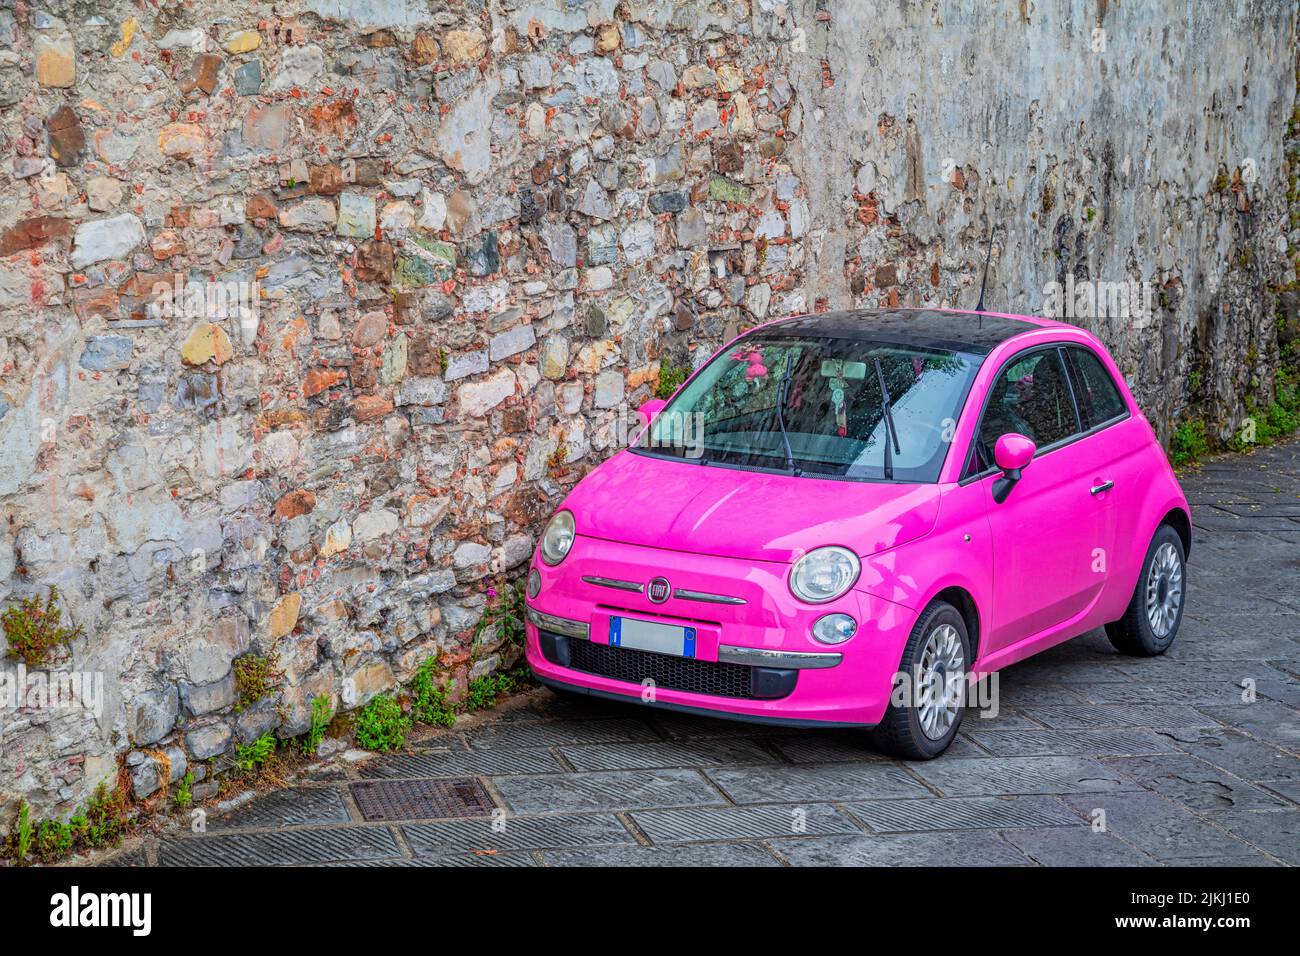 Italie, Toscane, Sienne. Une voiture de couleur rose, fiat 500, de style italien Banque D'Images